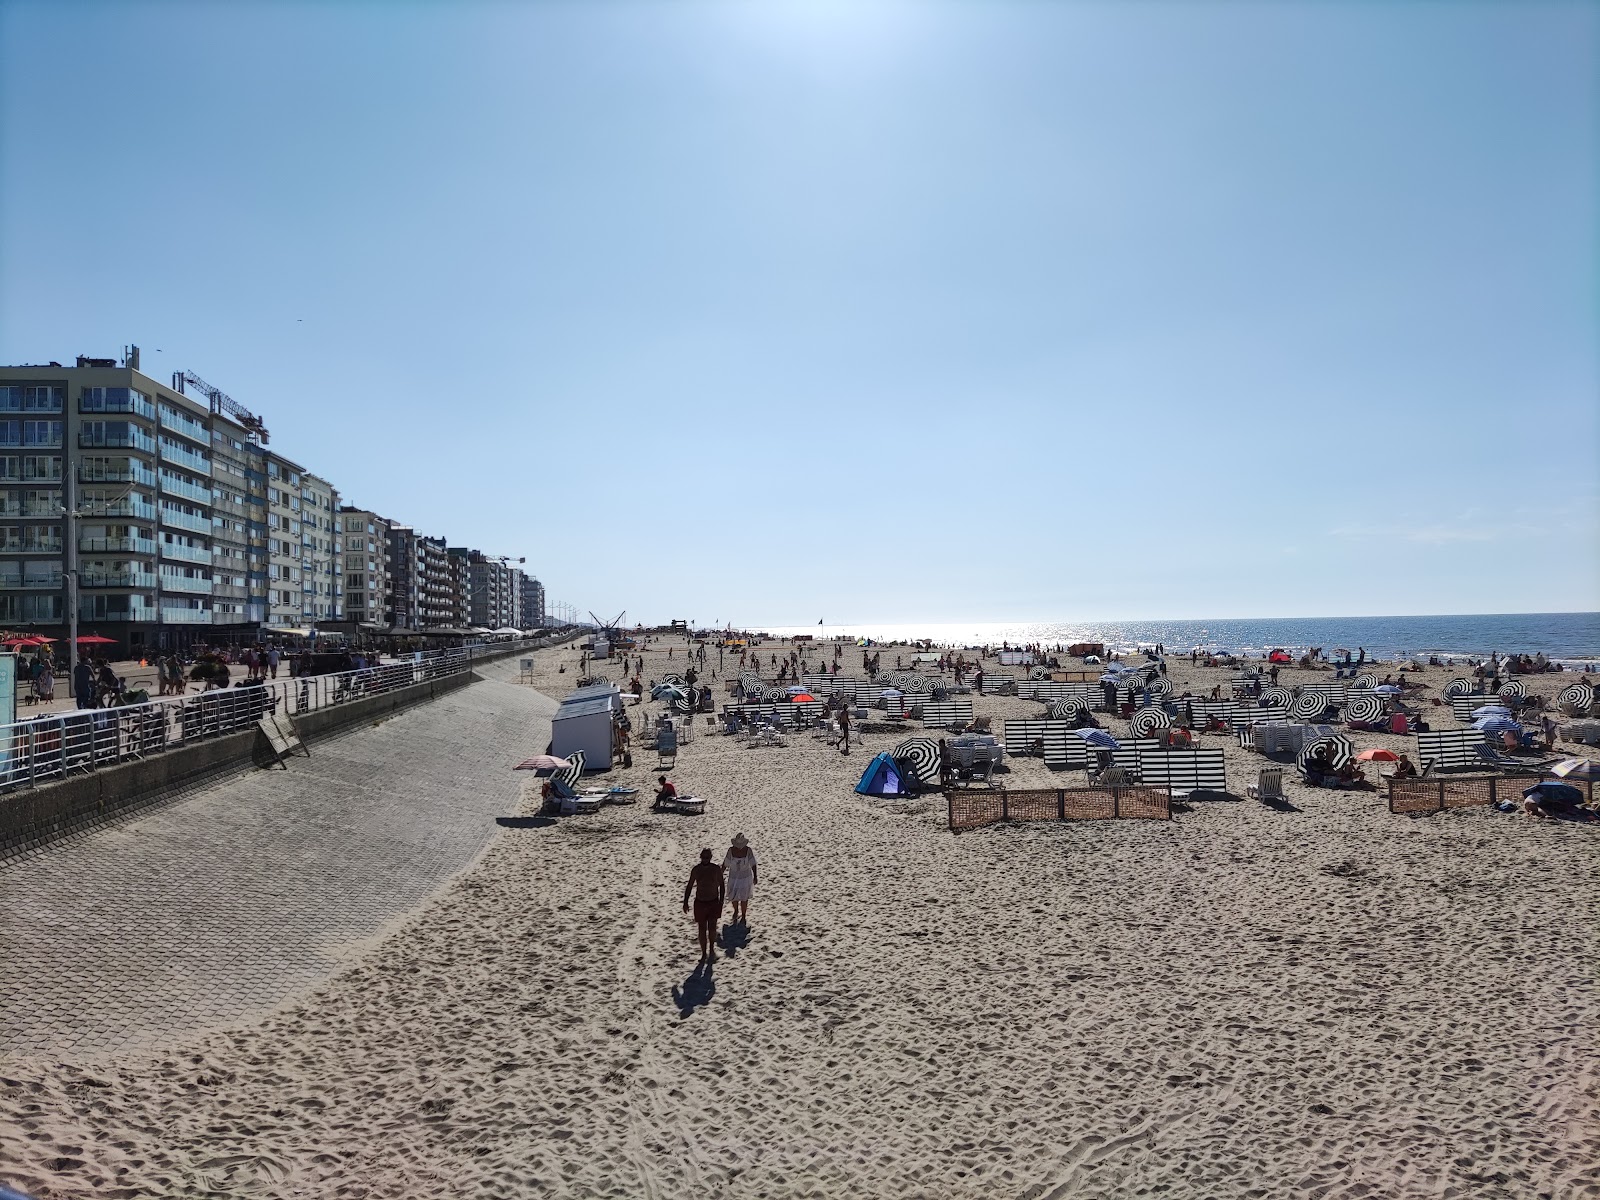 Φωτογραφία του De Panne Strand με φωτεινή άμμος επιφάνεια